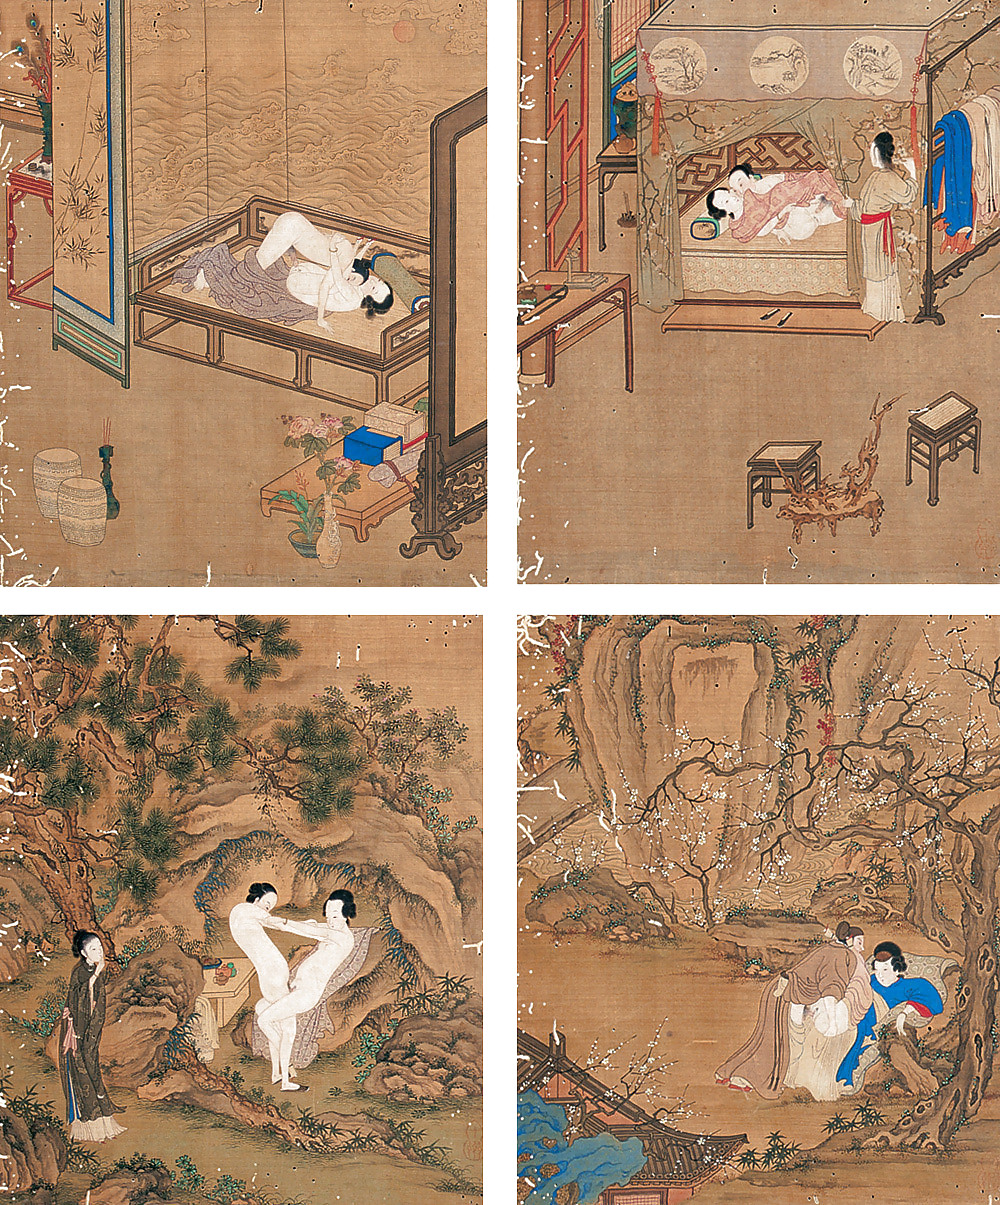 Dibujo ero y arte porno 2 - miniatura china periodo emperial
 #5517043